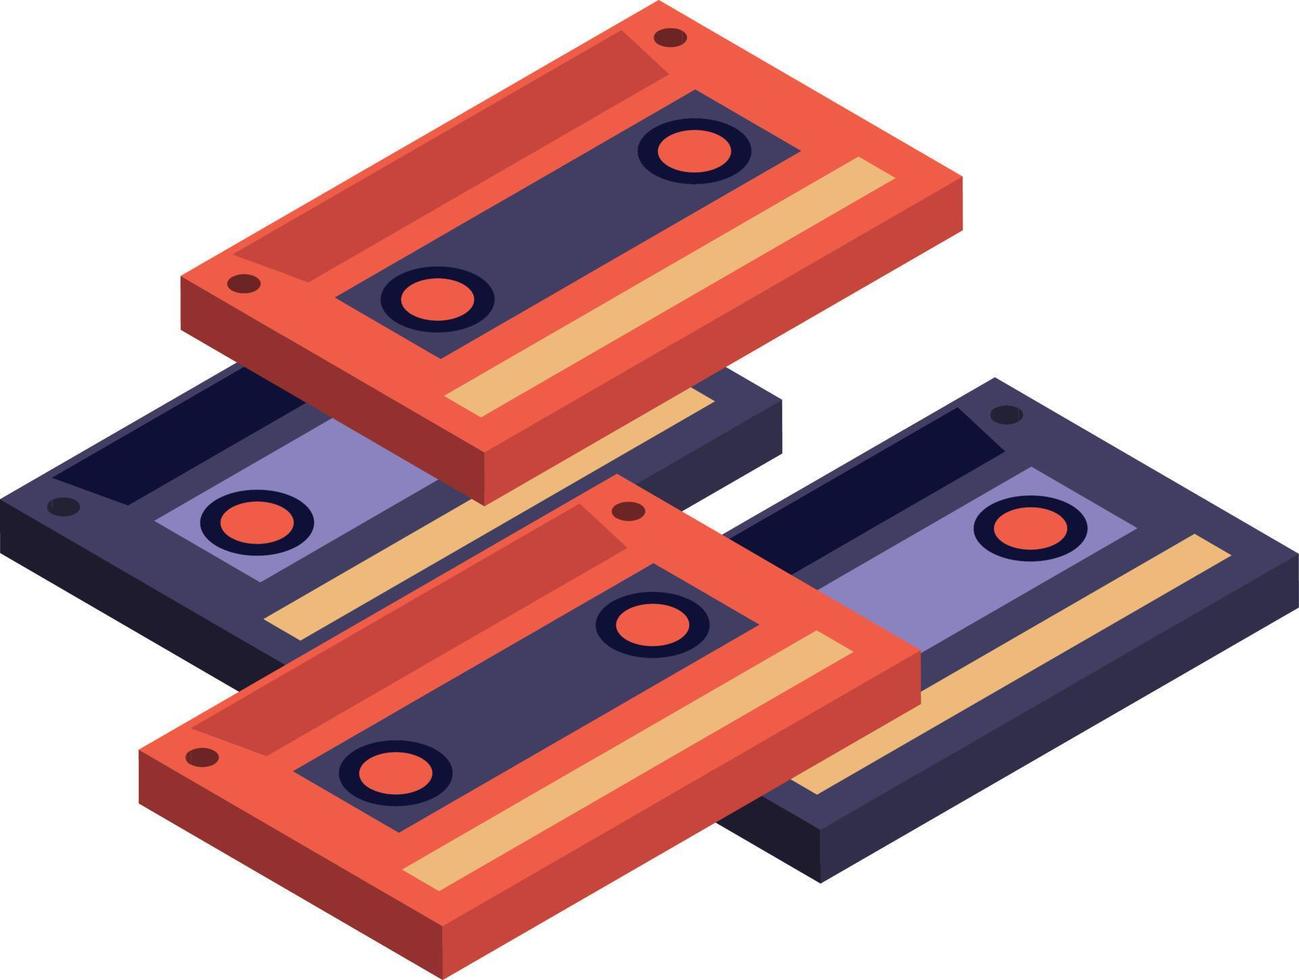 cassette tape illustration in 3D isometric style vector